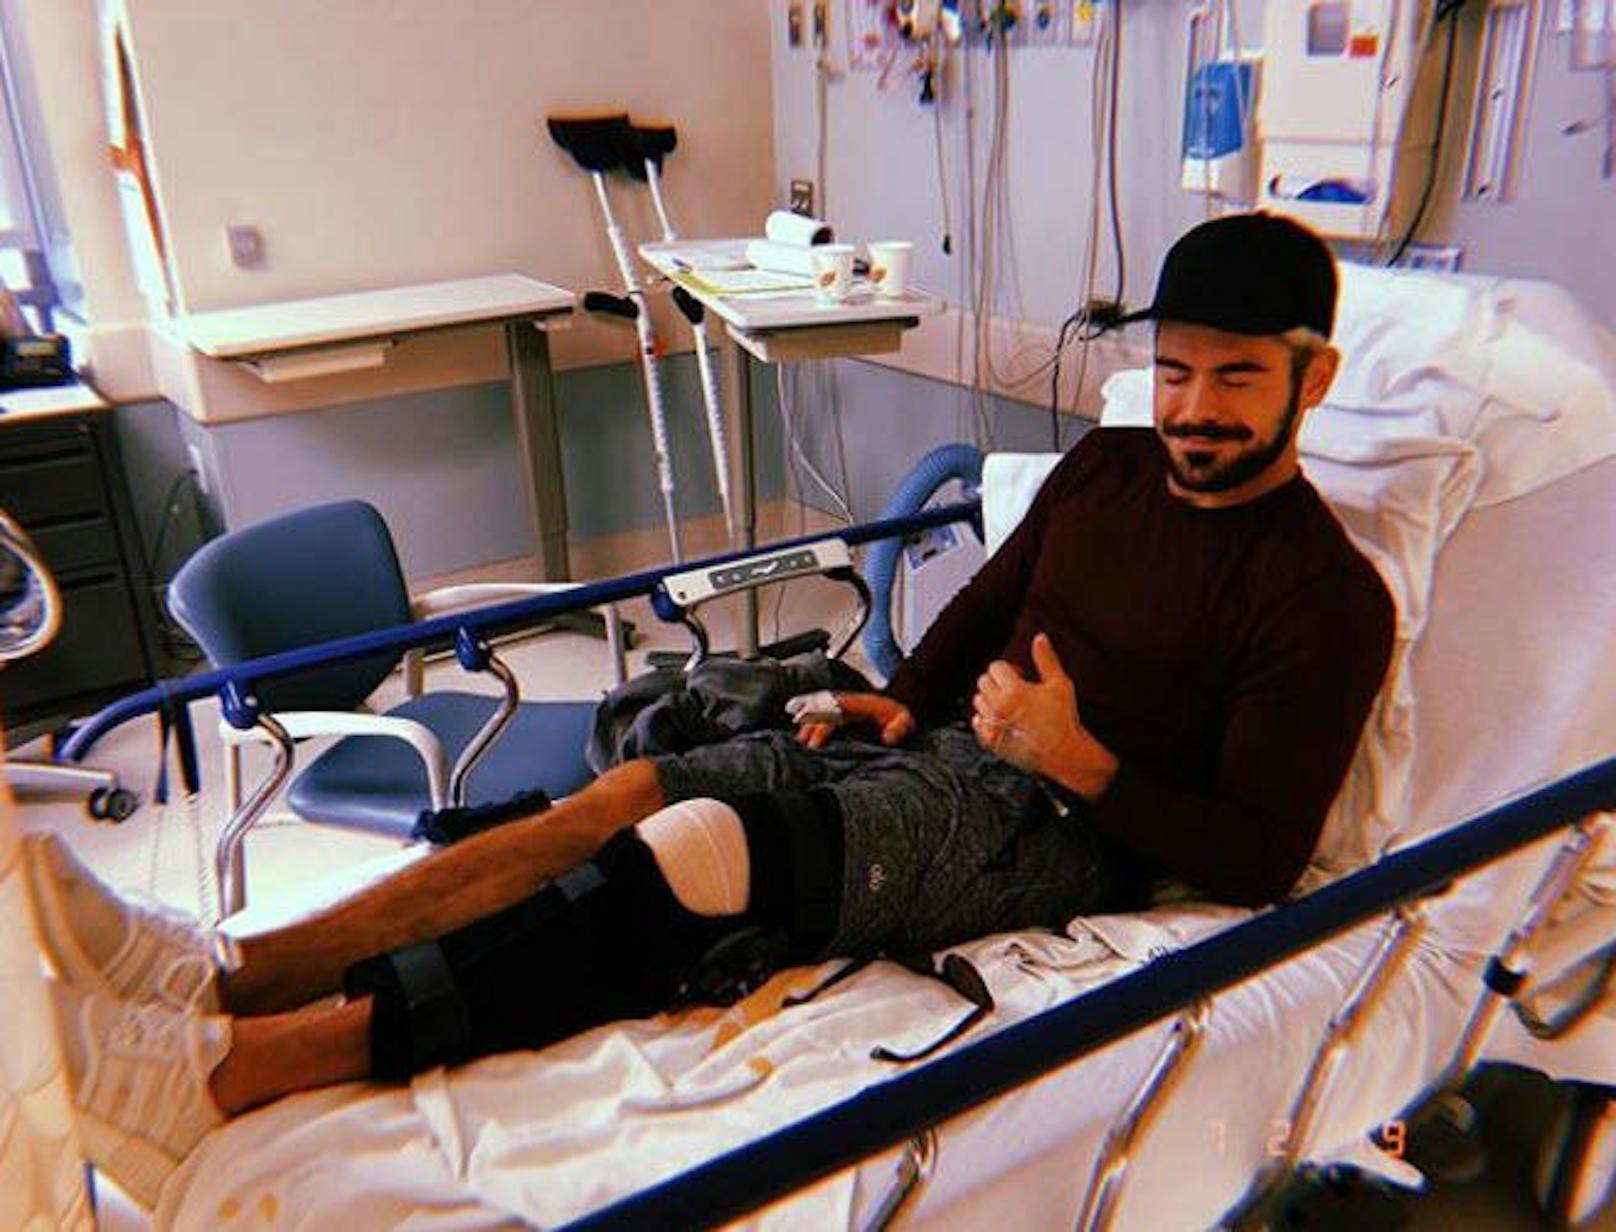 09.02.2019: Zac Efron unterzieht sich nach einem Kreuzbandriss einer Knie-Operation, ist aber guter Dinge. #comebackstronger